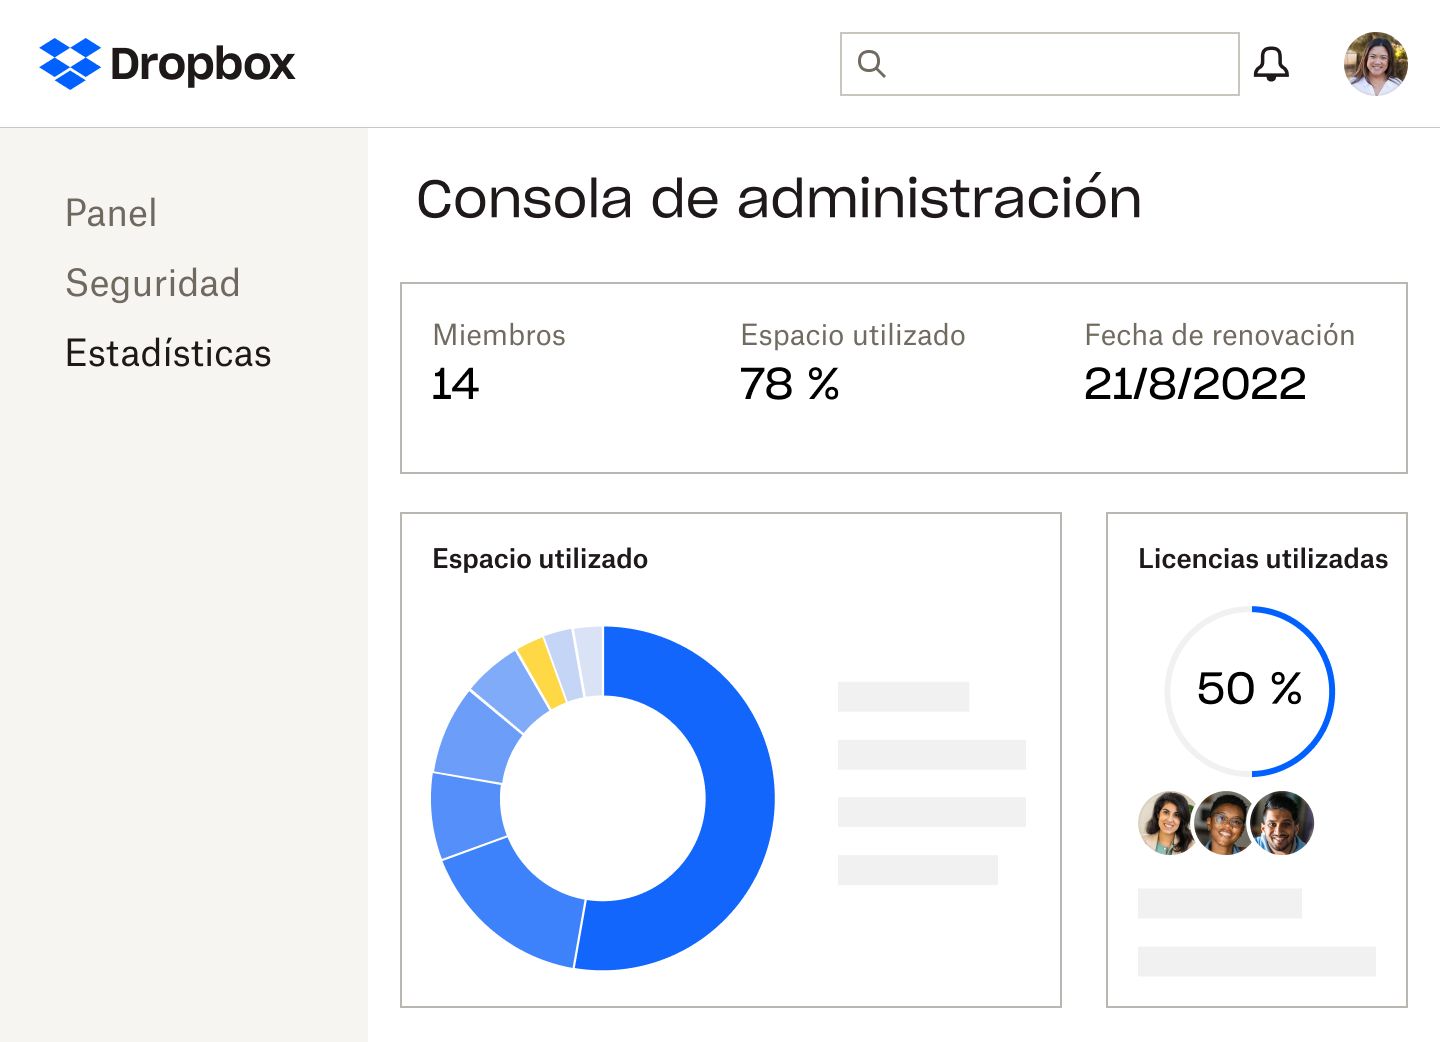 Consola de administración de Dropbox, en la que se muestran el número de miembros, el porcentaje de espacio de almacenamiento y de licencias utilizado, la fecha de renovación de la suscripción y un gráfico circular azul y amarillo del espacio usado